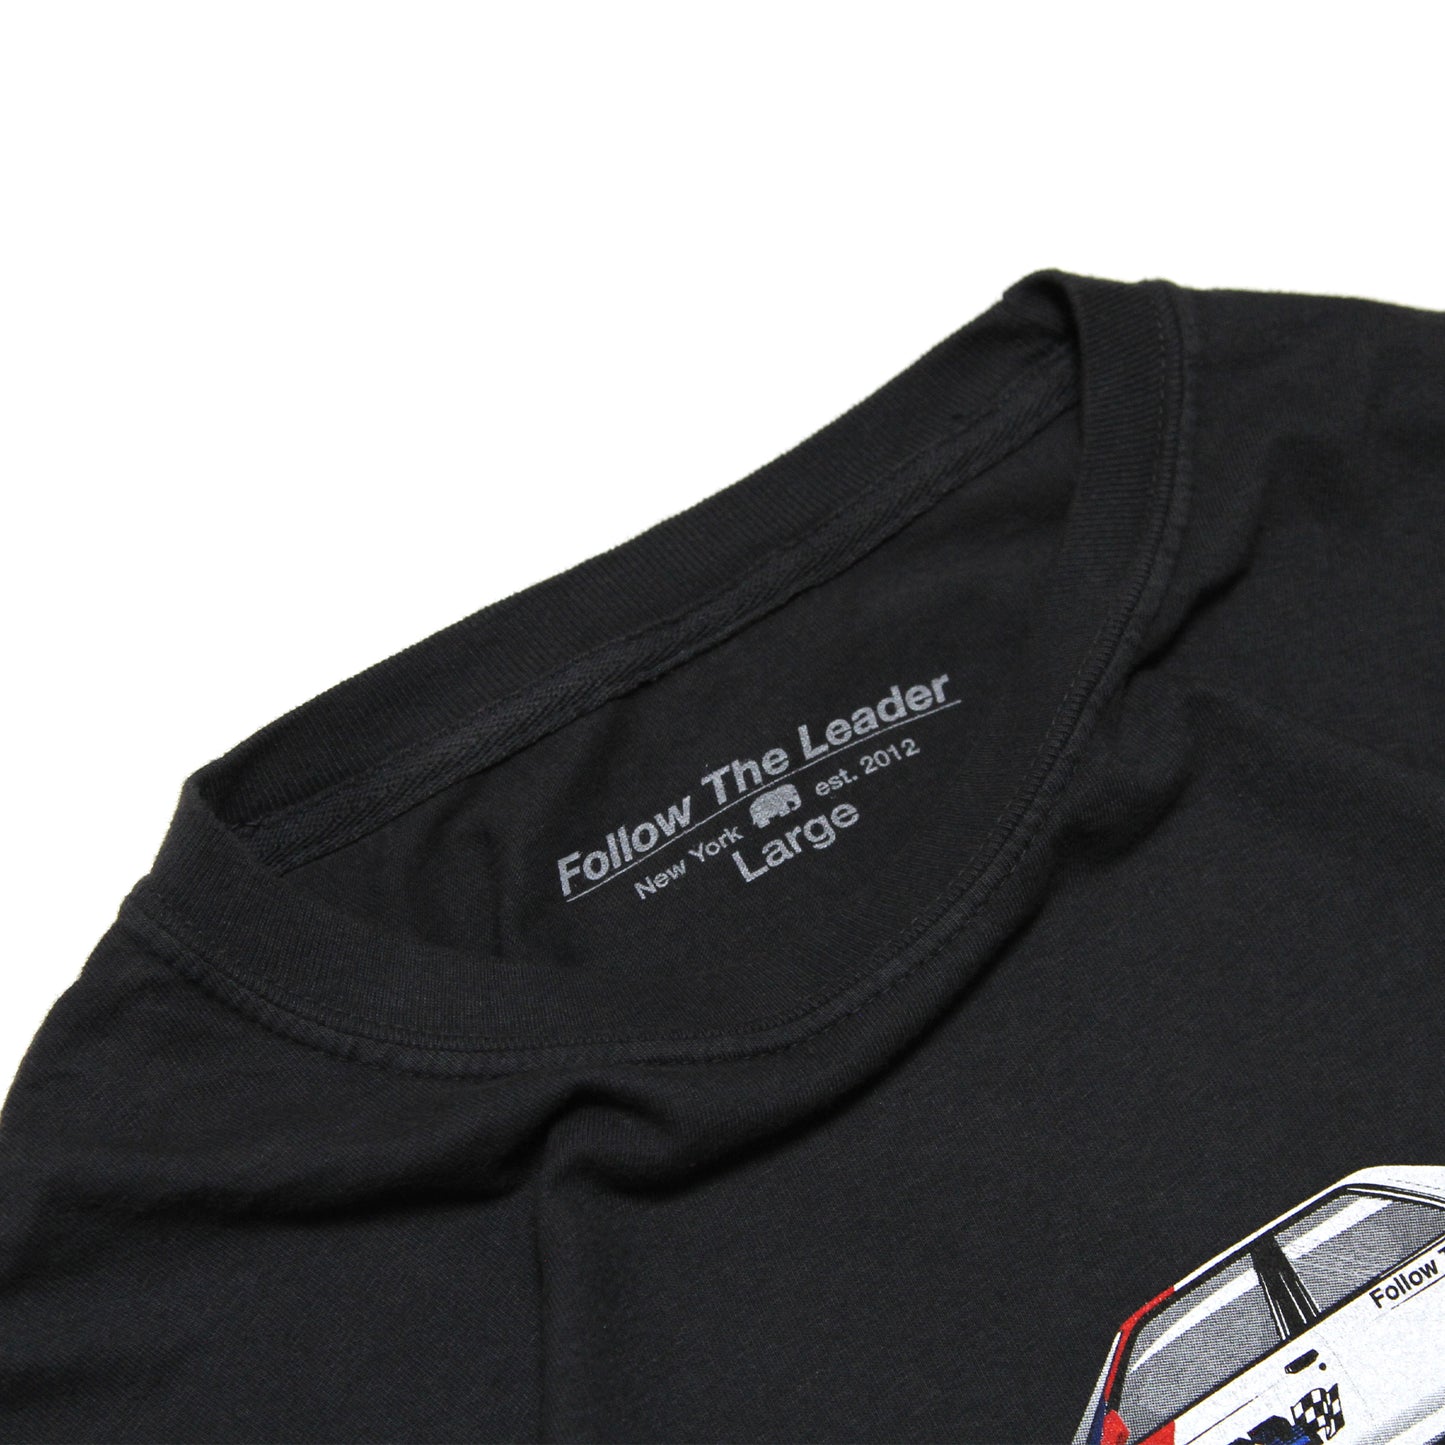 FTL - E30 DTM T-Shirt/Black